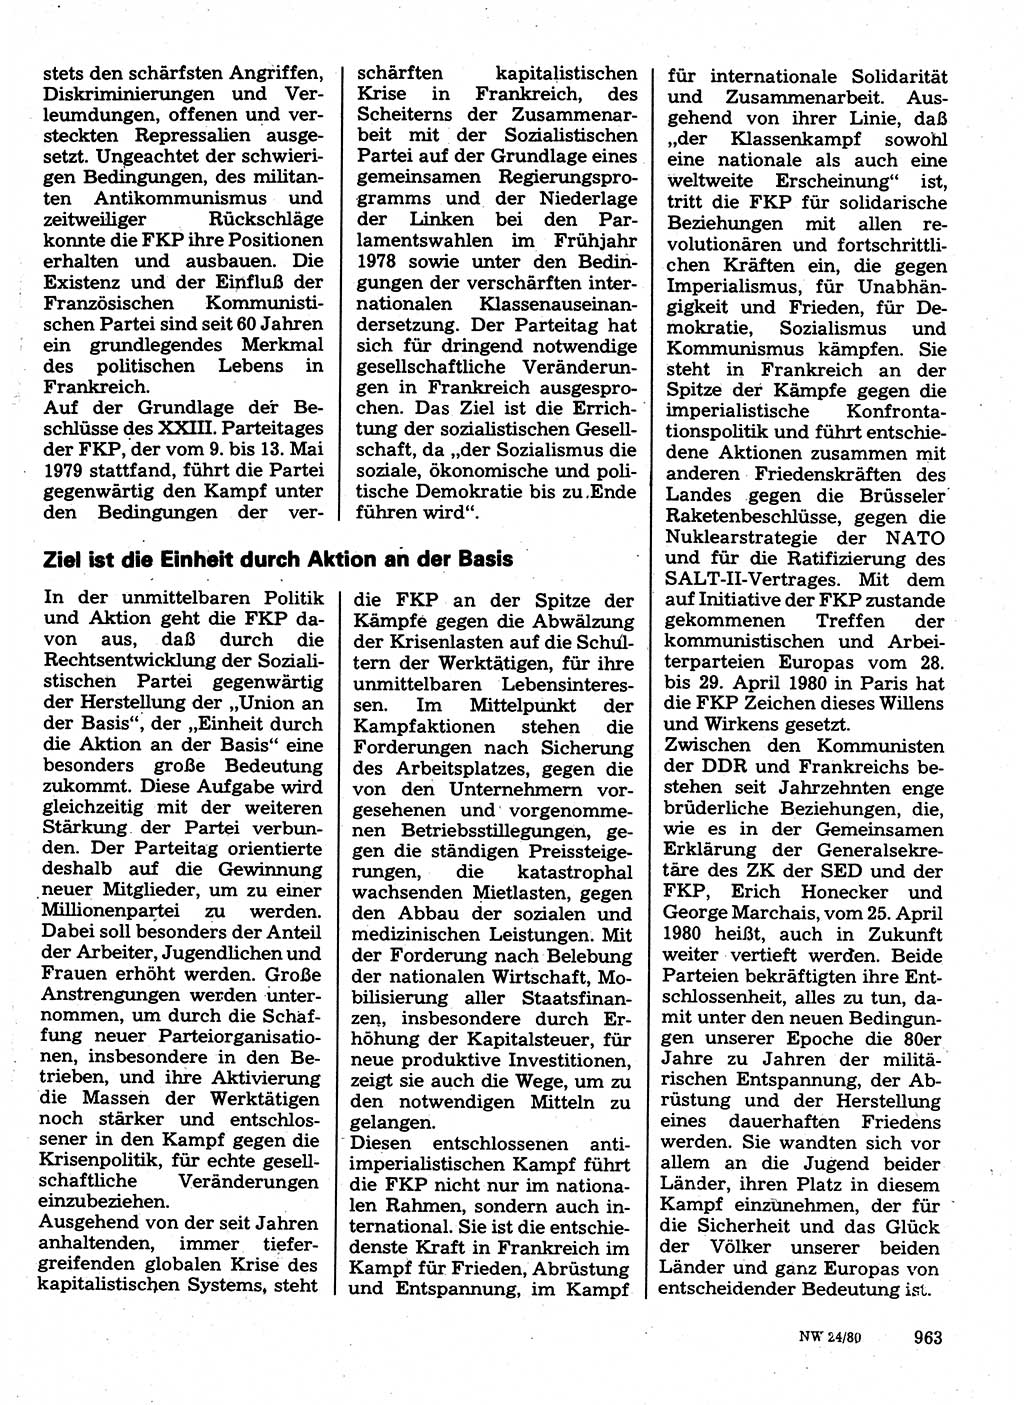 Neuer Weg (NW), Organ des Zentralkomitees (ZK) der SED (Sozialistische Einheitspartei Deutschlands) für Fragen des Parteilebens, 35. Jahrgang [Deutsche Demokratische Republik (DDR)] 1980, Seite 963 (NW ZK SED DDR 1980, S. 963)